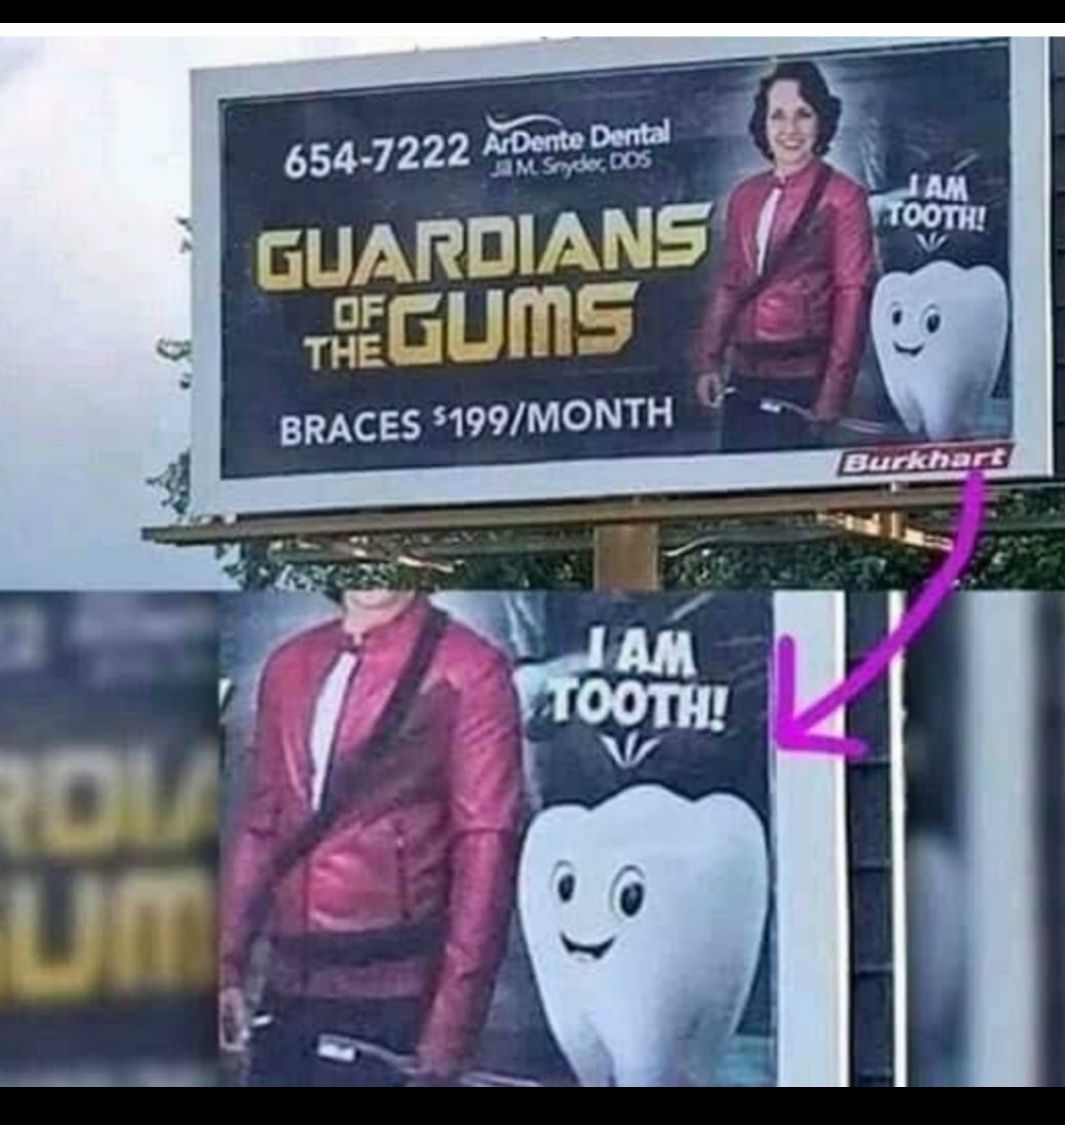 random pics - guardians of the gums - 6547222 ArDente Dental Jam Snyder, Dos Jam Tooth! Guardians Thegums Braces $199Month Burkhart Jam Tooth!